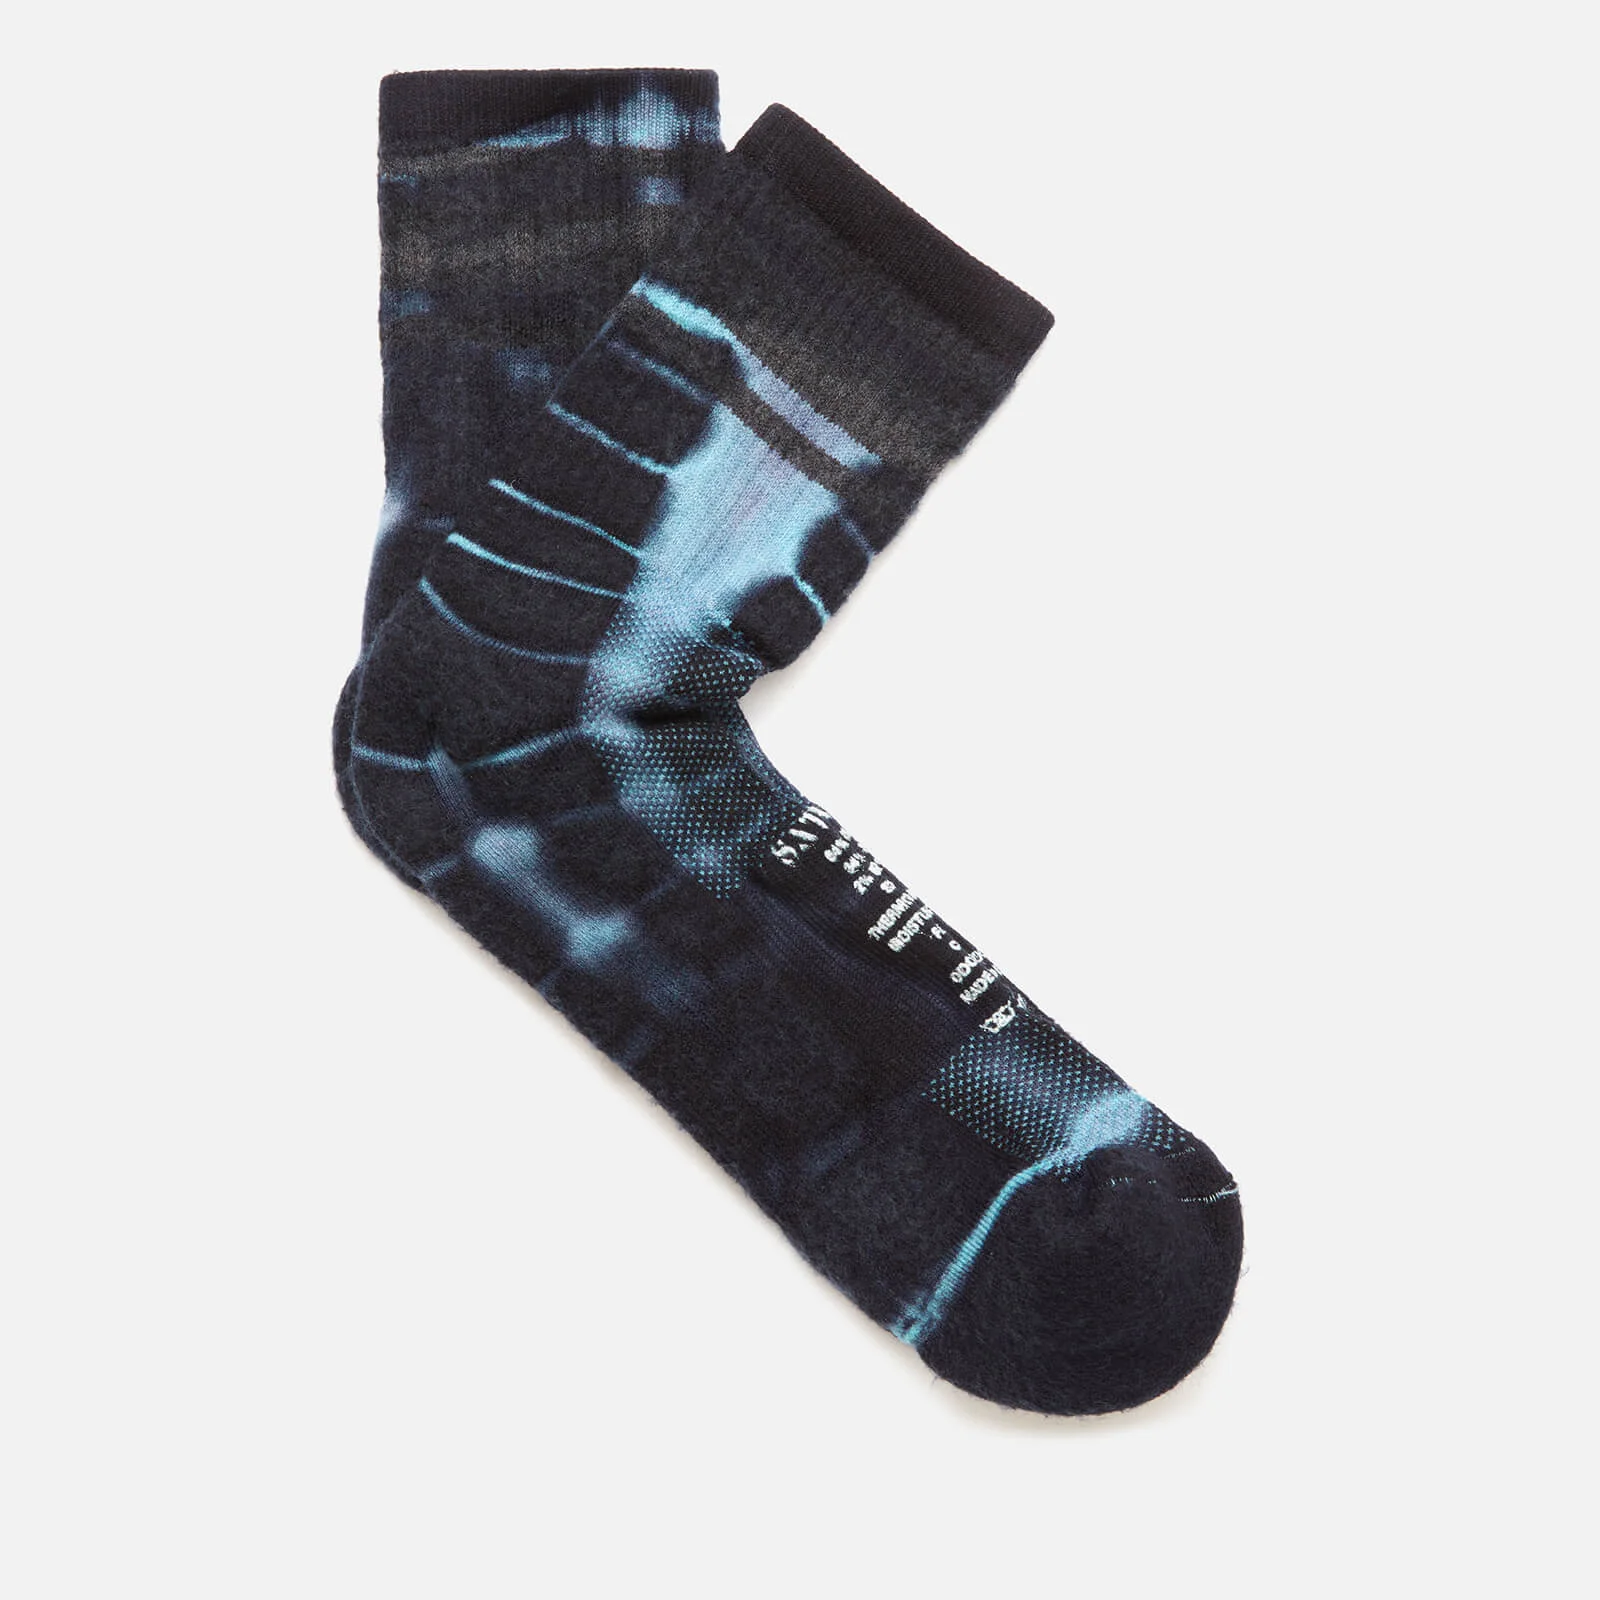 Satisfy Men's Merino Tube Socks - Indigo Tie Die Image 1